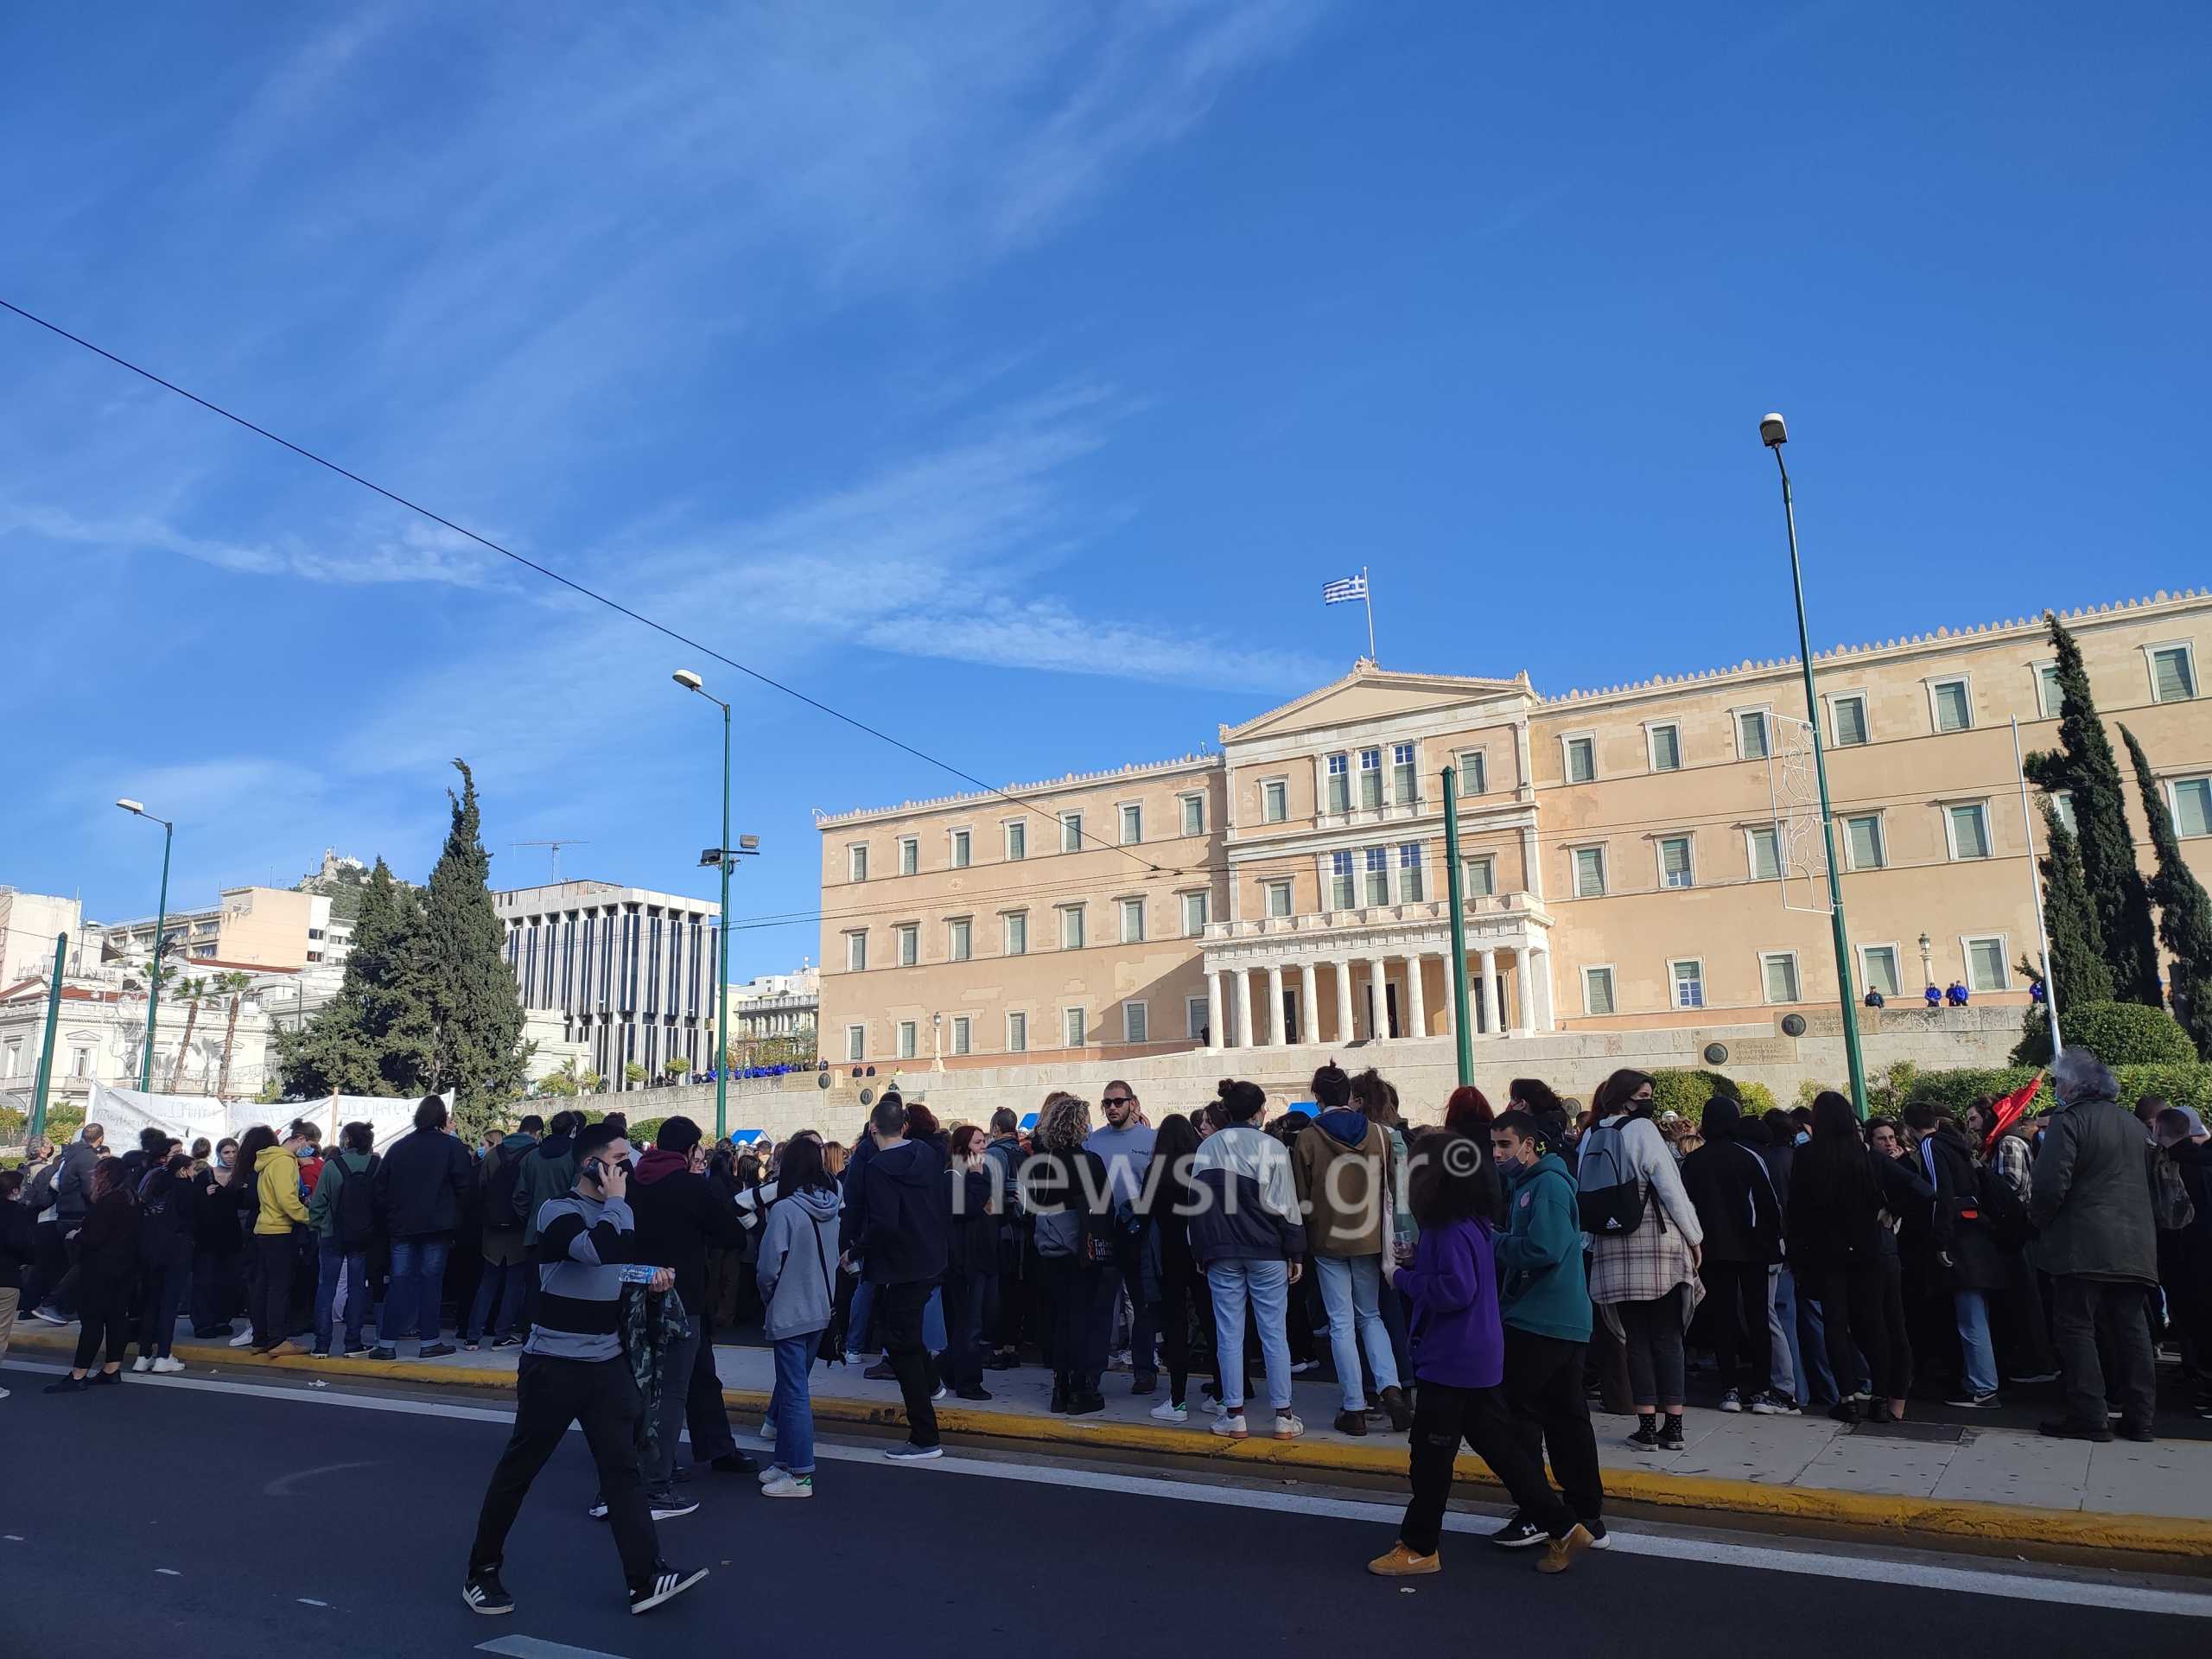 Αλέξανδρος Γρηγορόπουλος: Ολοκληρώθηκε η πορεία μαθητών και φοιτητών – Άνοιξε η οδός Πανεπιστημίου